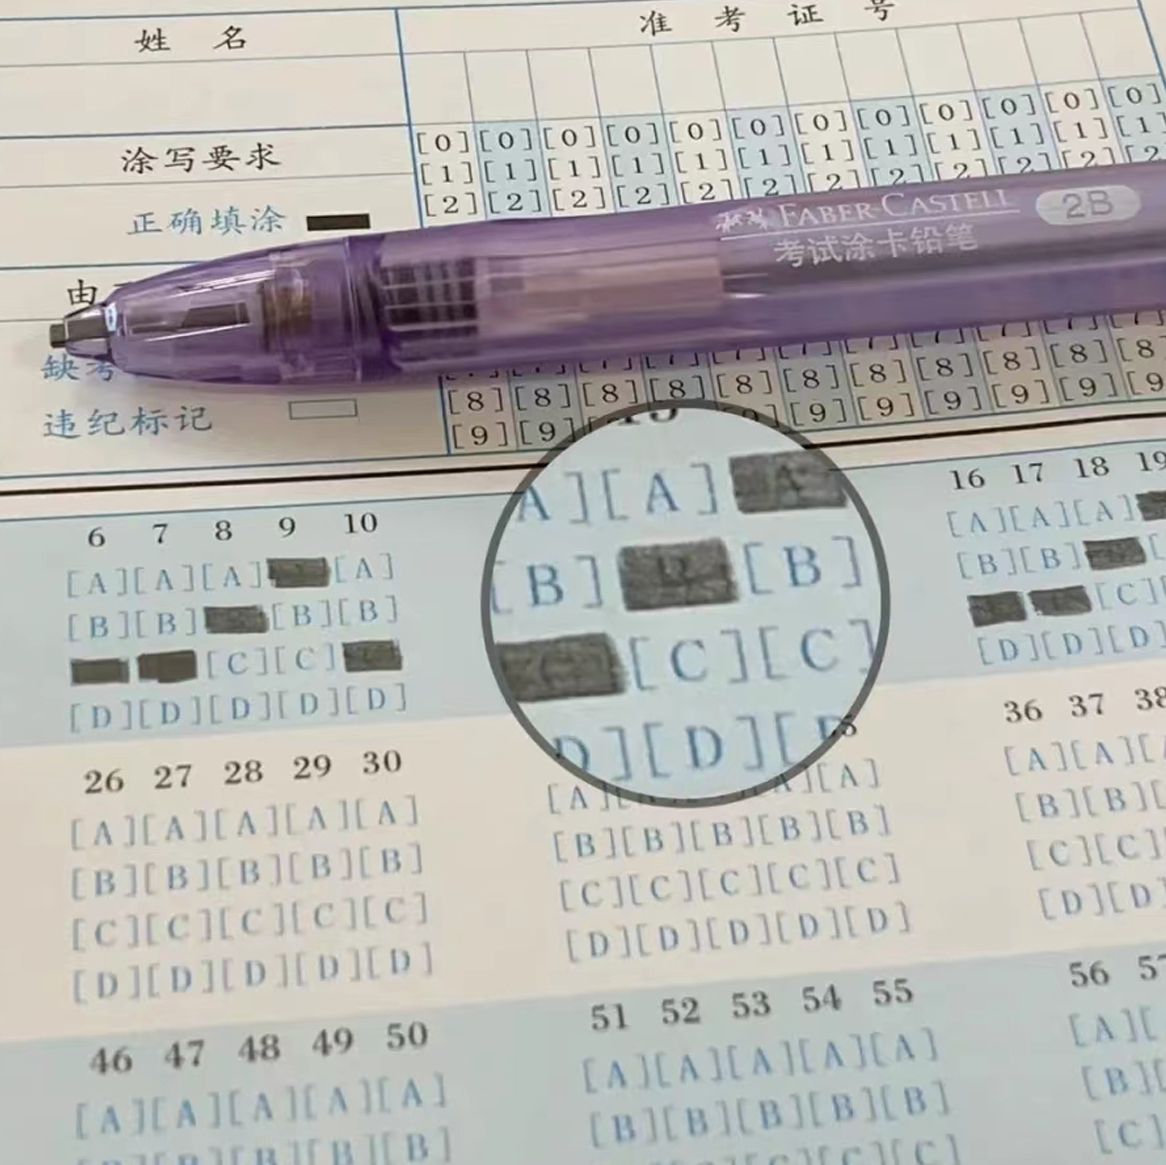 辉柏嘉涂卡铅笔2B考试答题卡专用笔敦煌山海经中高考学生考试用-图2